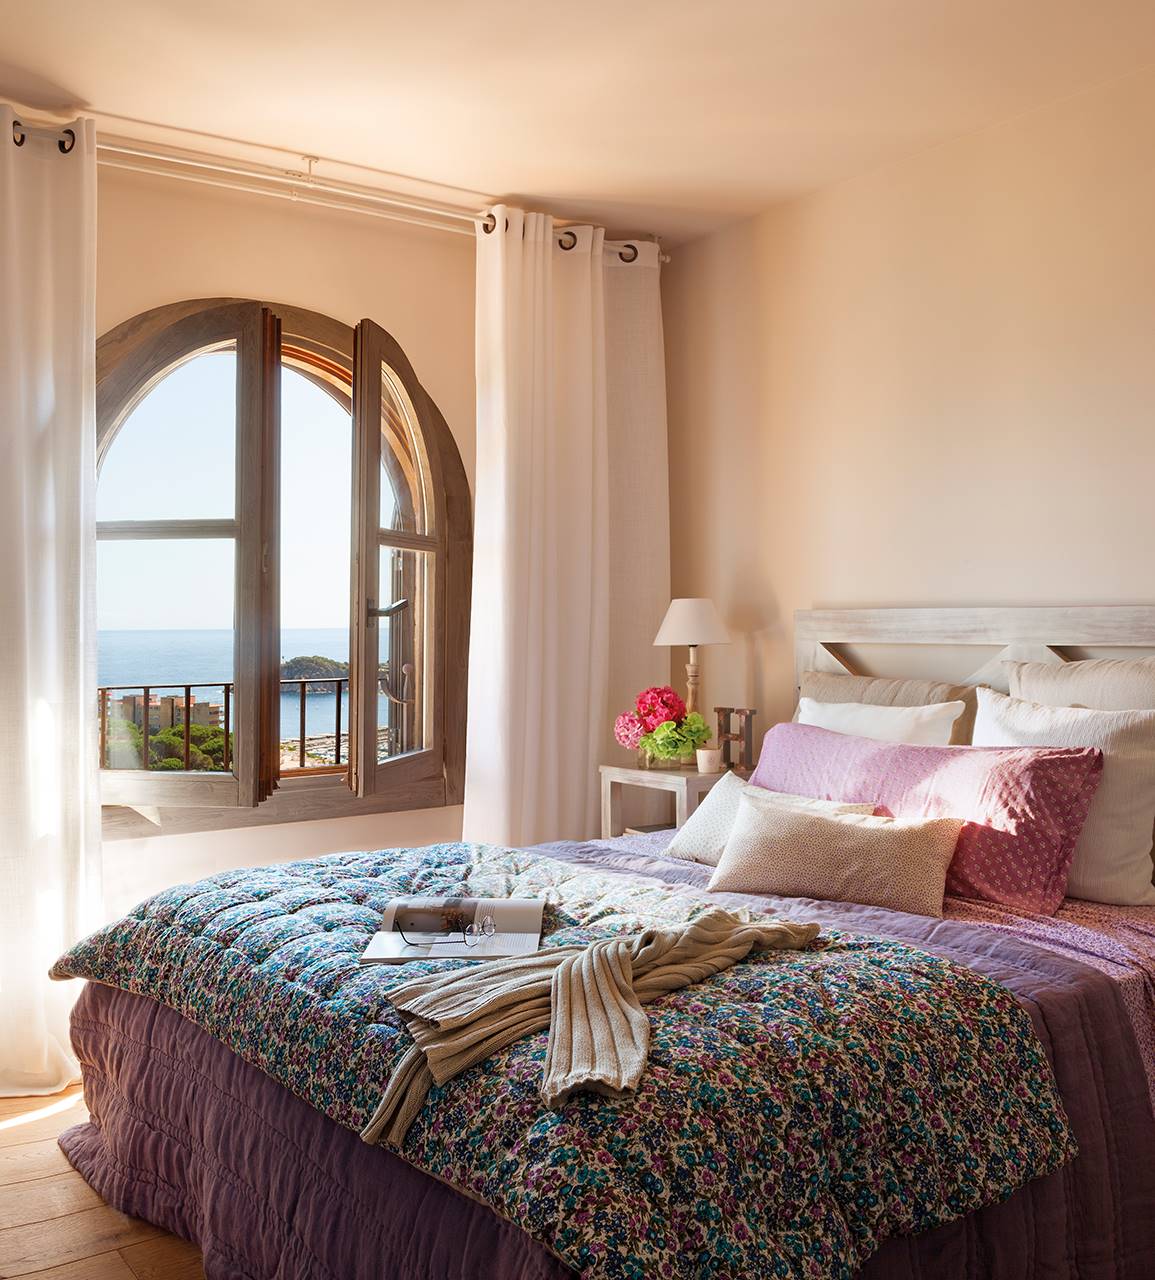 Dormitorio veraniego con ventana en arco y vistas al mar